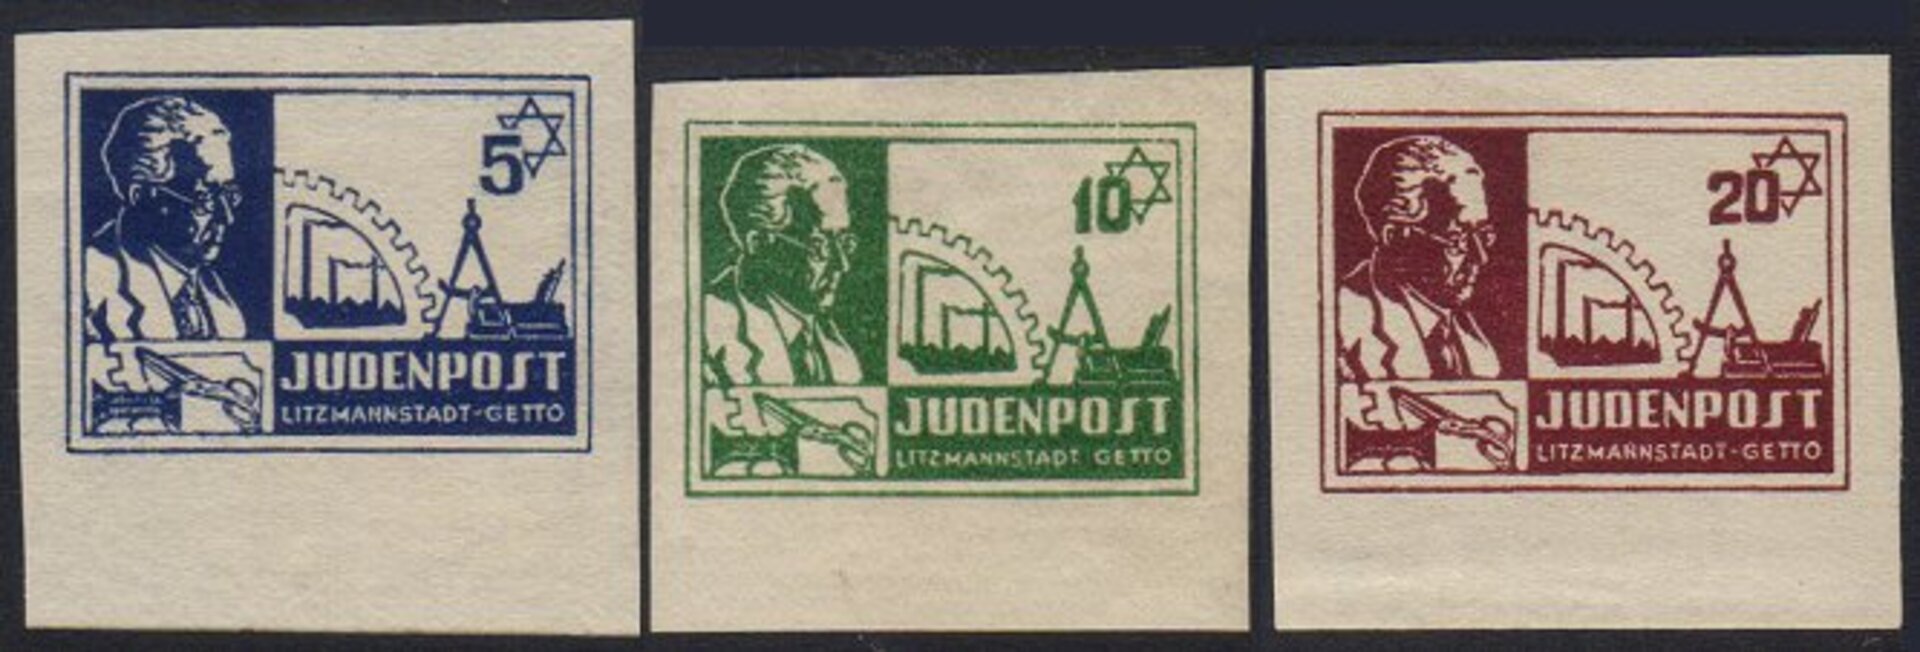 The Litzmannstadt Ghetto stamps